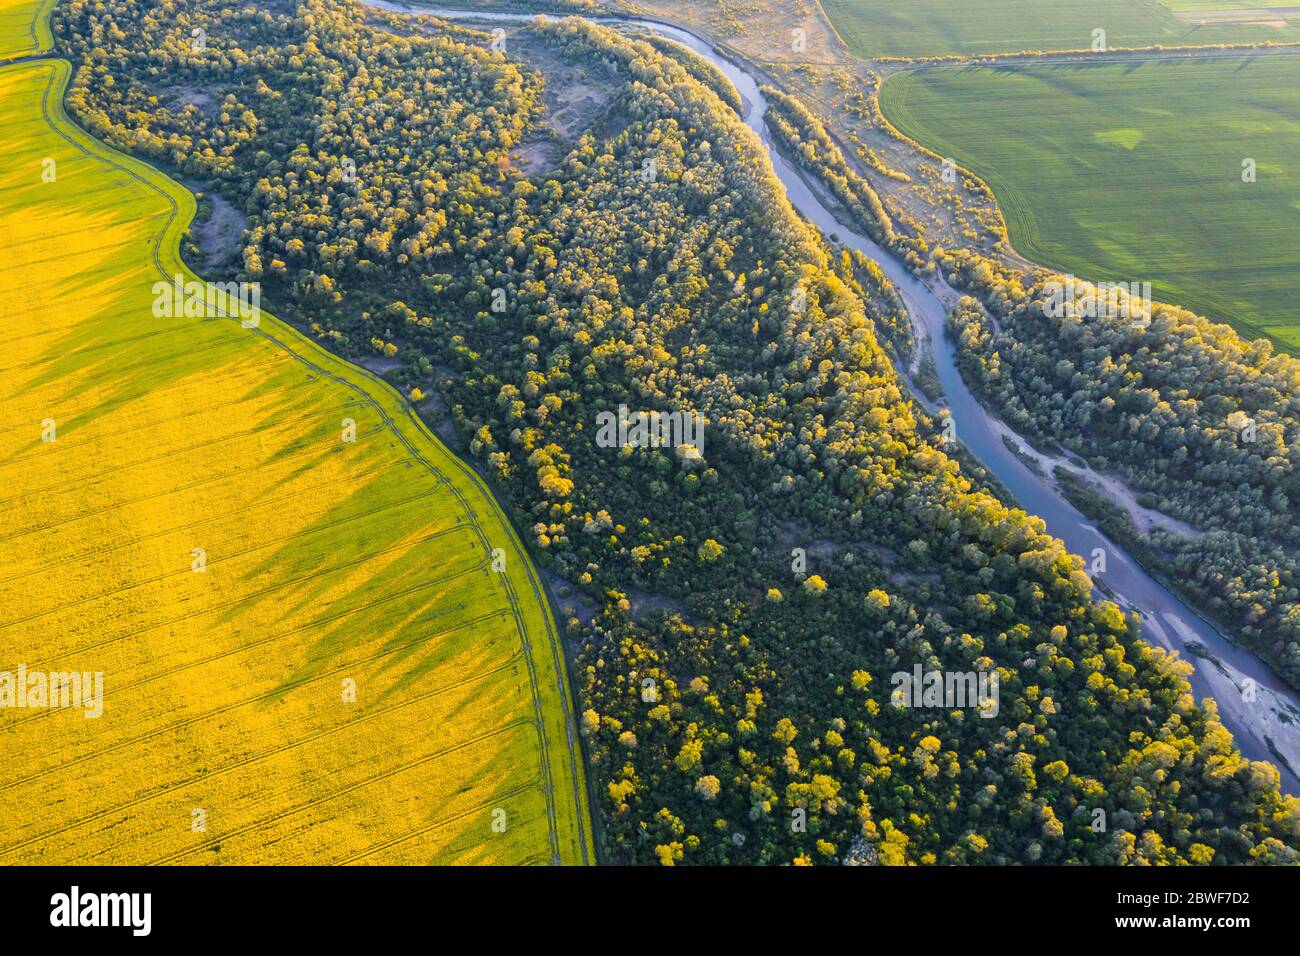 Envolez-vous à travers la rivière majestueuse, la forêt verdoyante et les champs de colza jaune en pleine floraison au coucher du soleil. Photographie de paysage Banque D'Images